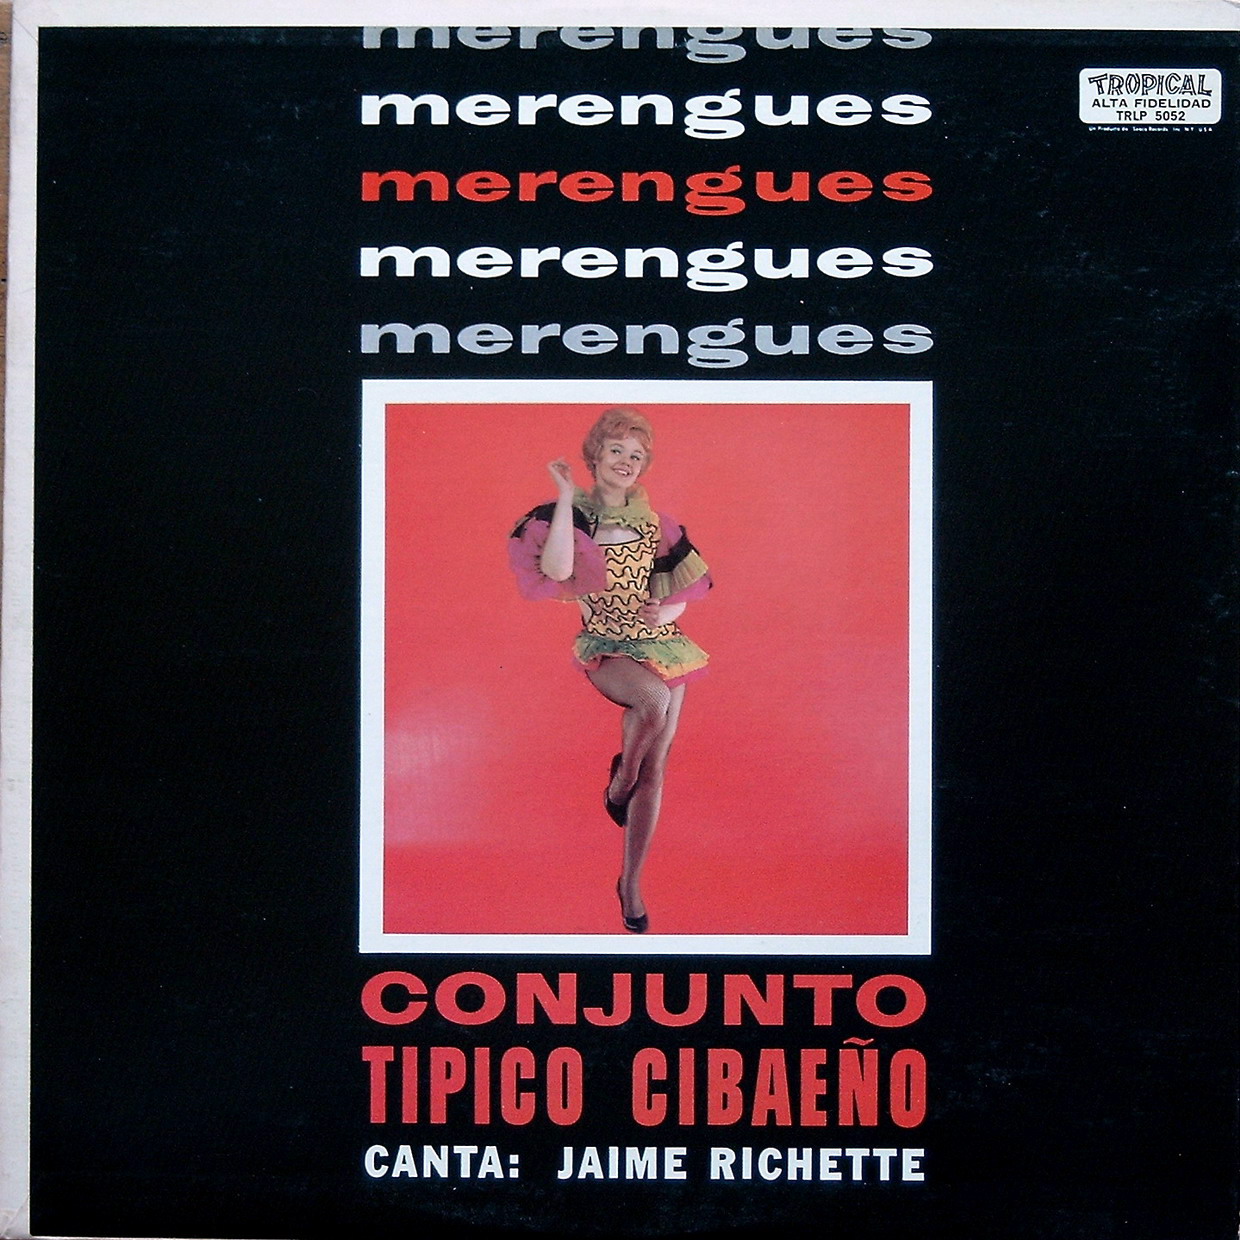  conjunto tipico cibaeño - merengues (1973) Trlp+5052